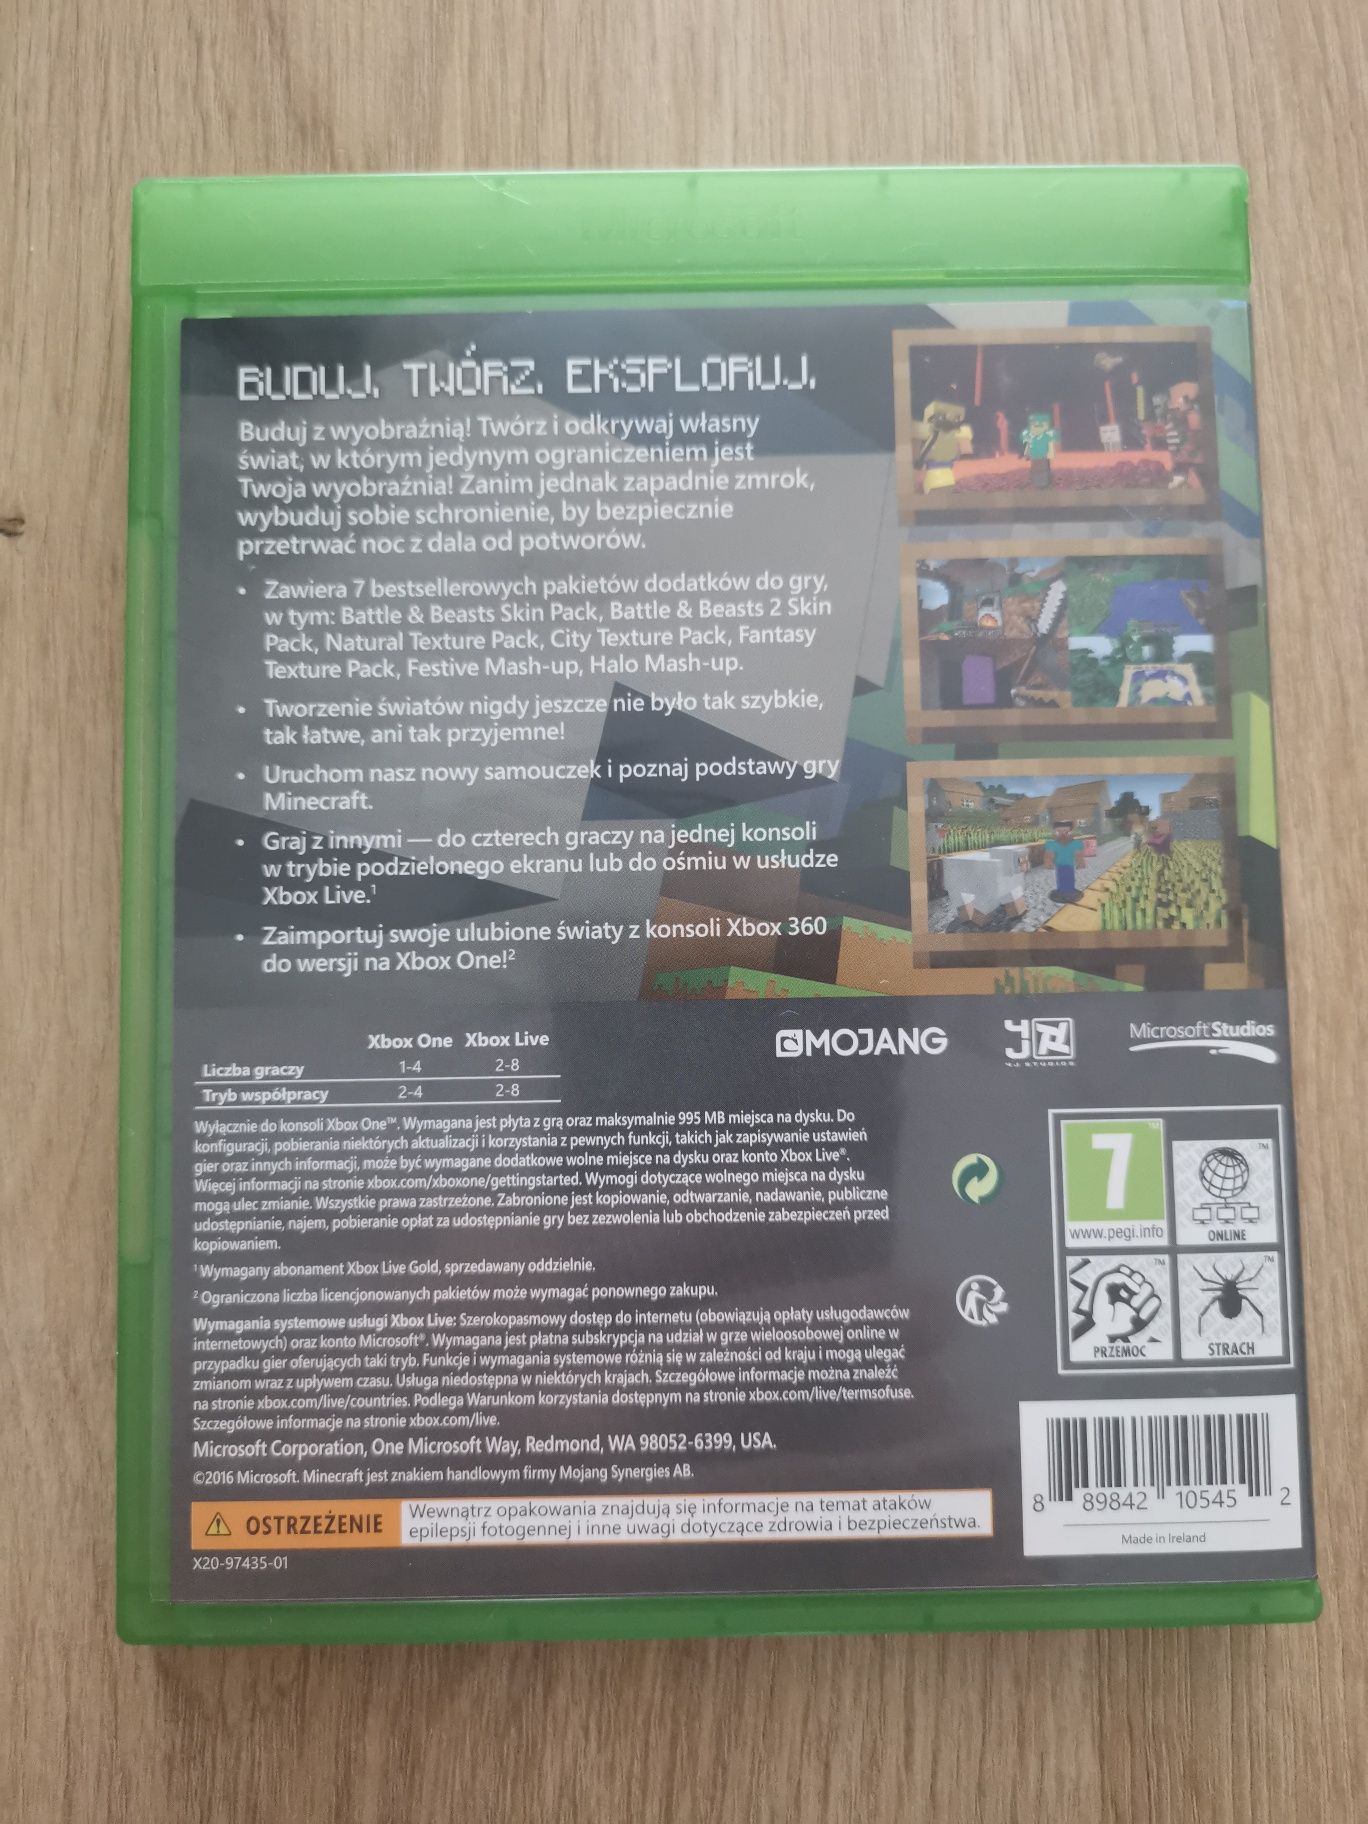 Xbox One Minecraft + pakiet ulubionych dodatków